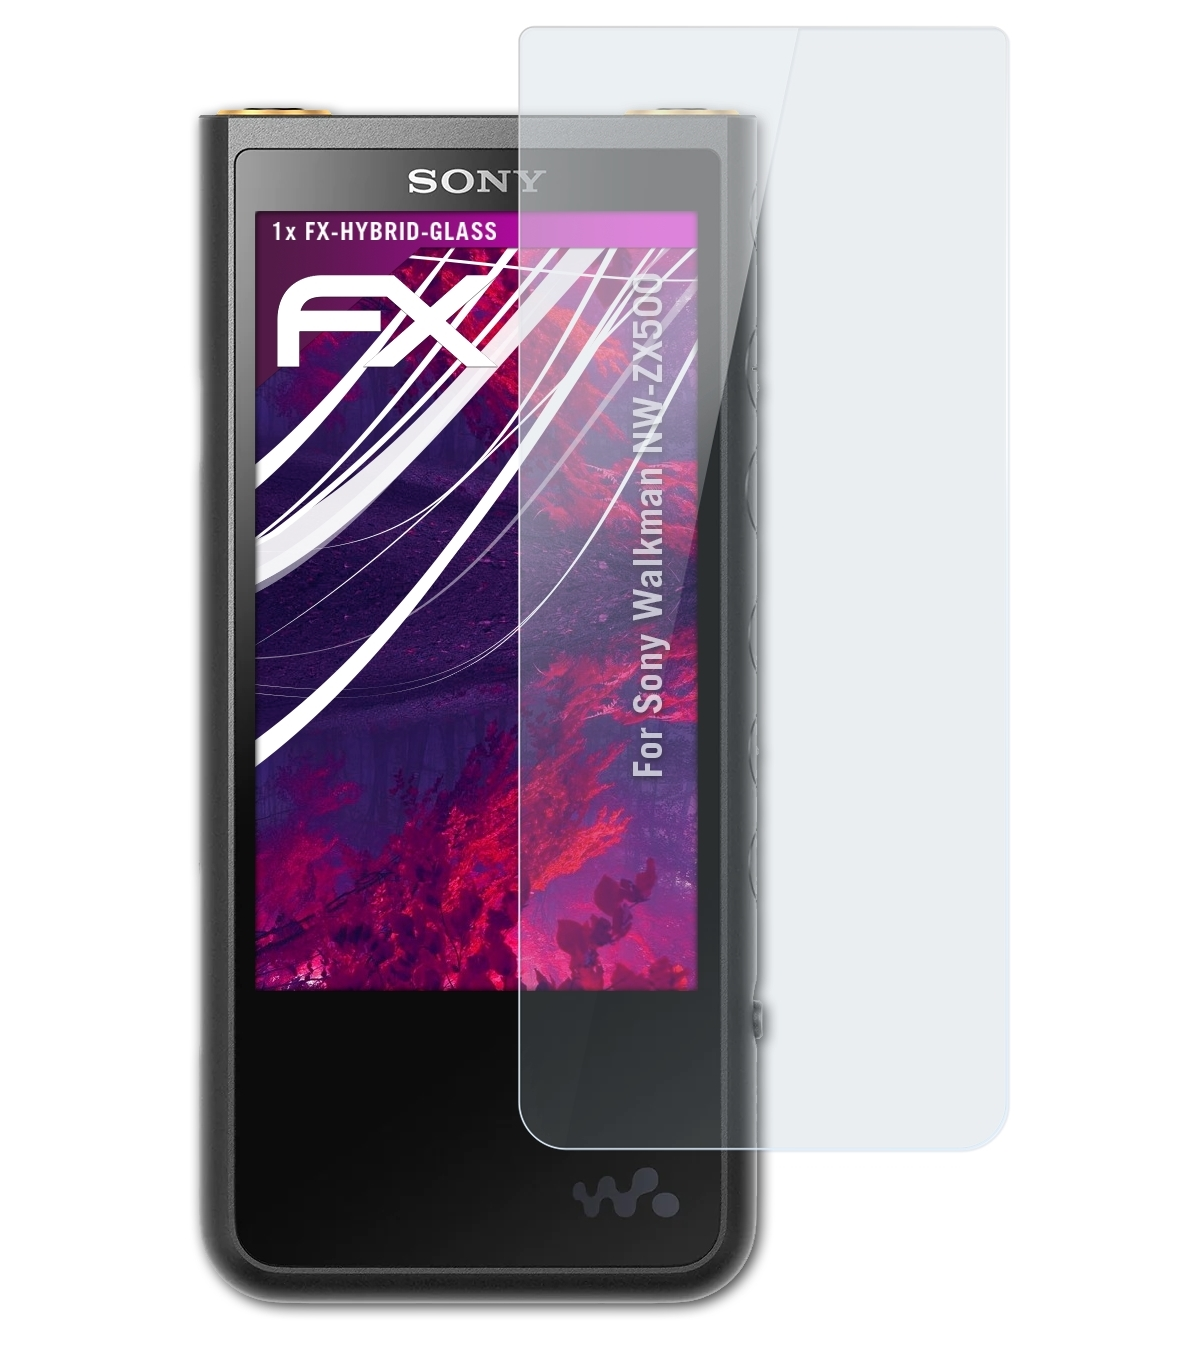 ATFOLIX FX-Hybrid-Glass Schutzglas(für Sony Walkman NW-ZX500)